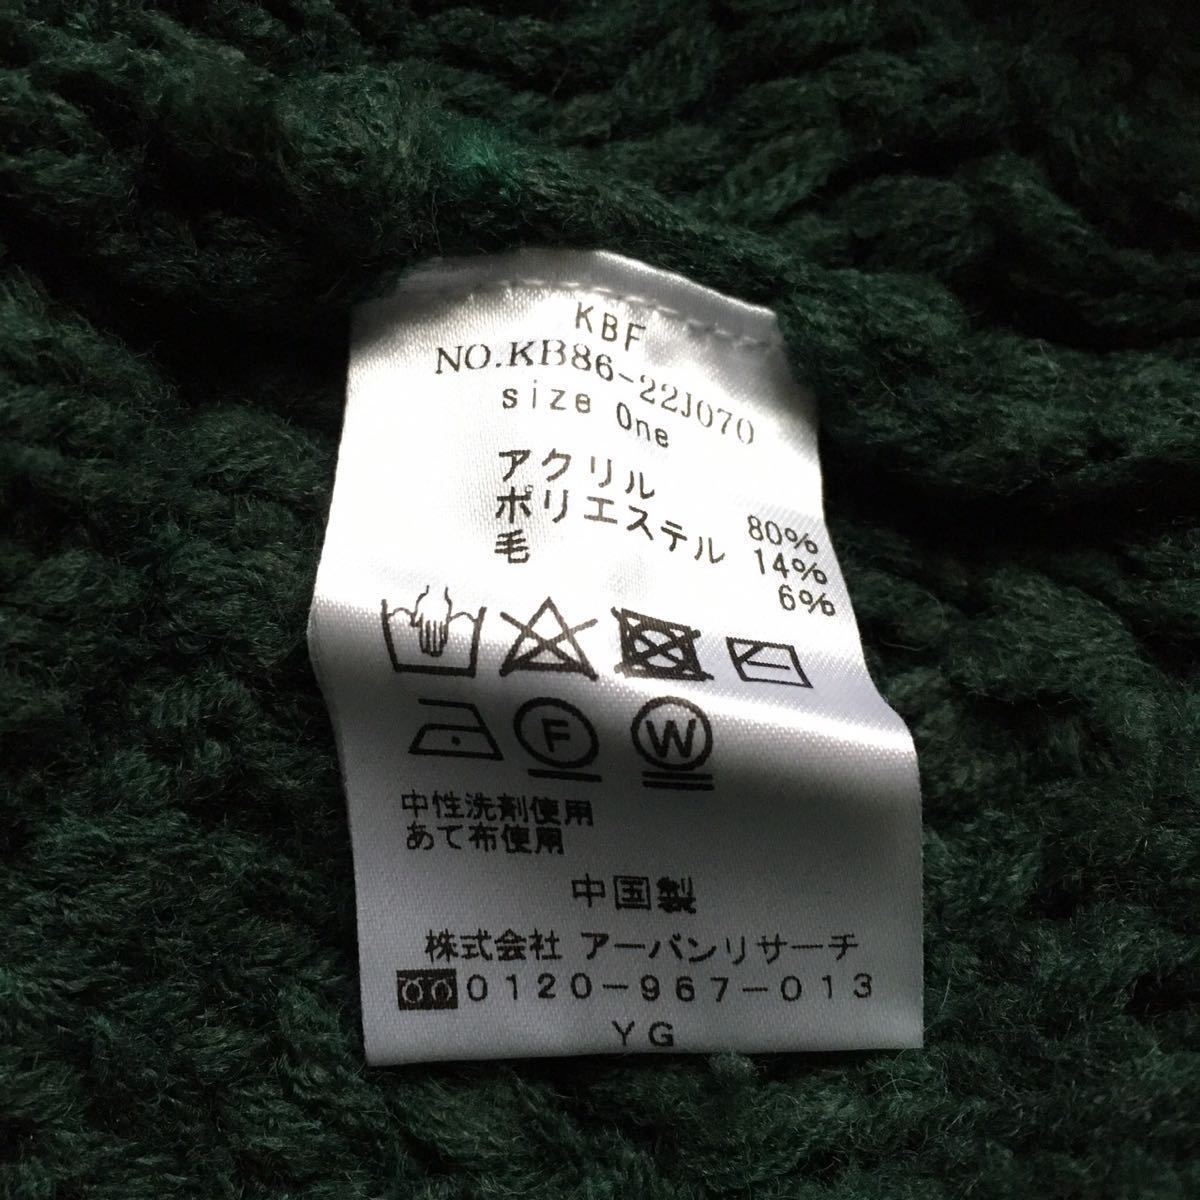 ke- Be ef кабель лоскутное шитье вязаный 085-6-23 обычная цена 6500 иен + налог KBF свитер зеленый женский 